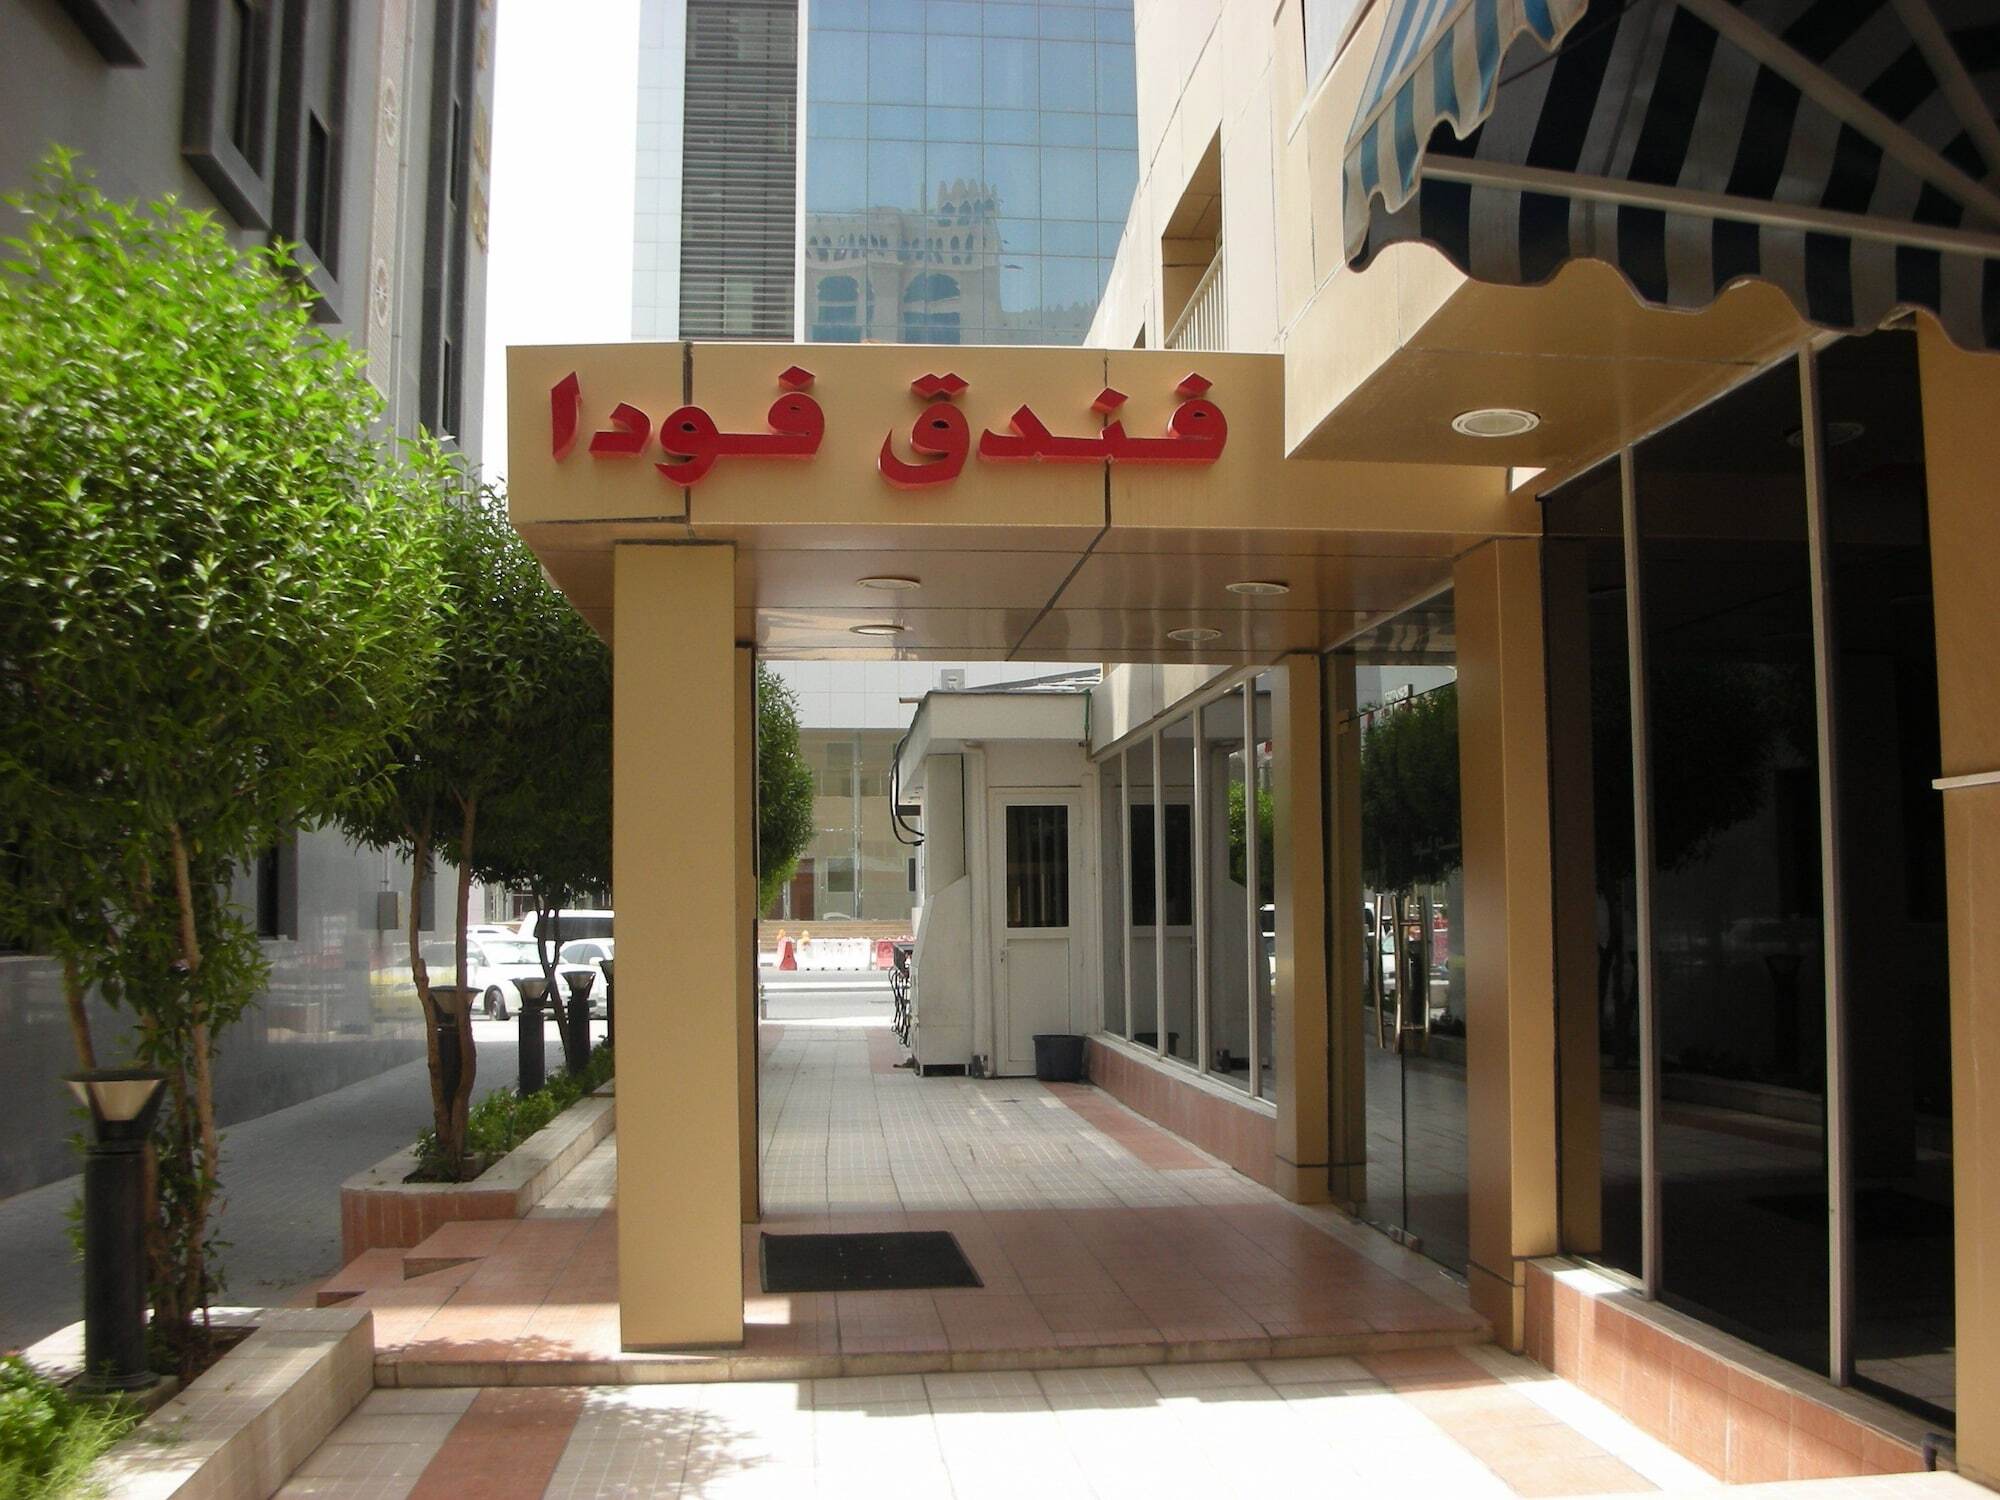 Fuda Hotel Doha Exterior photo